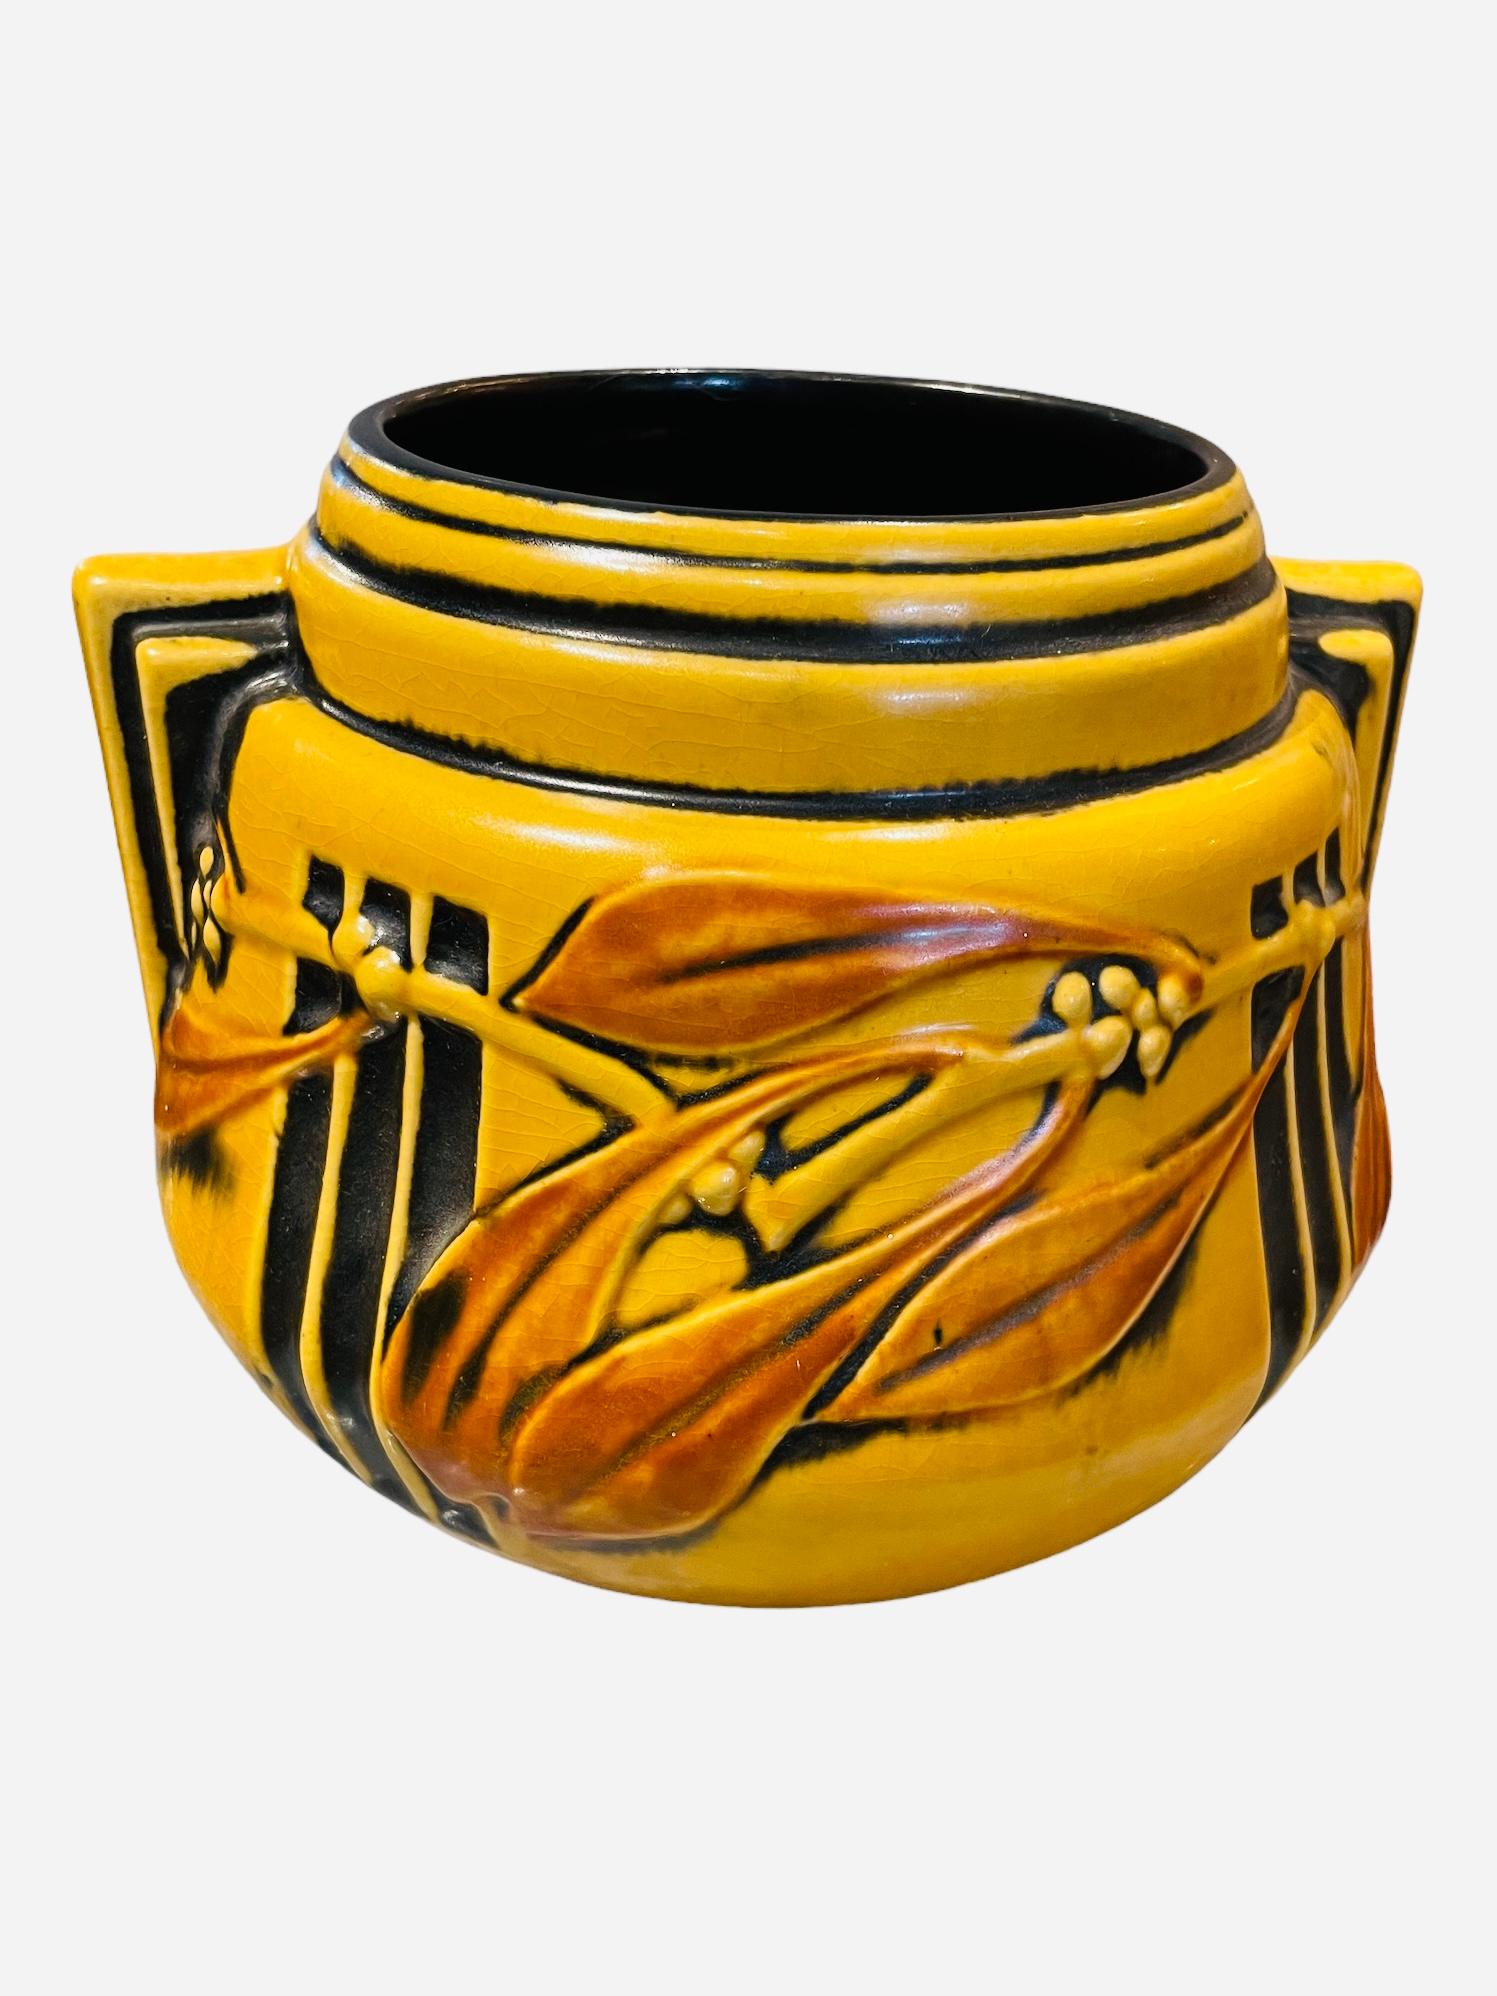 roseville pottery vase patterns